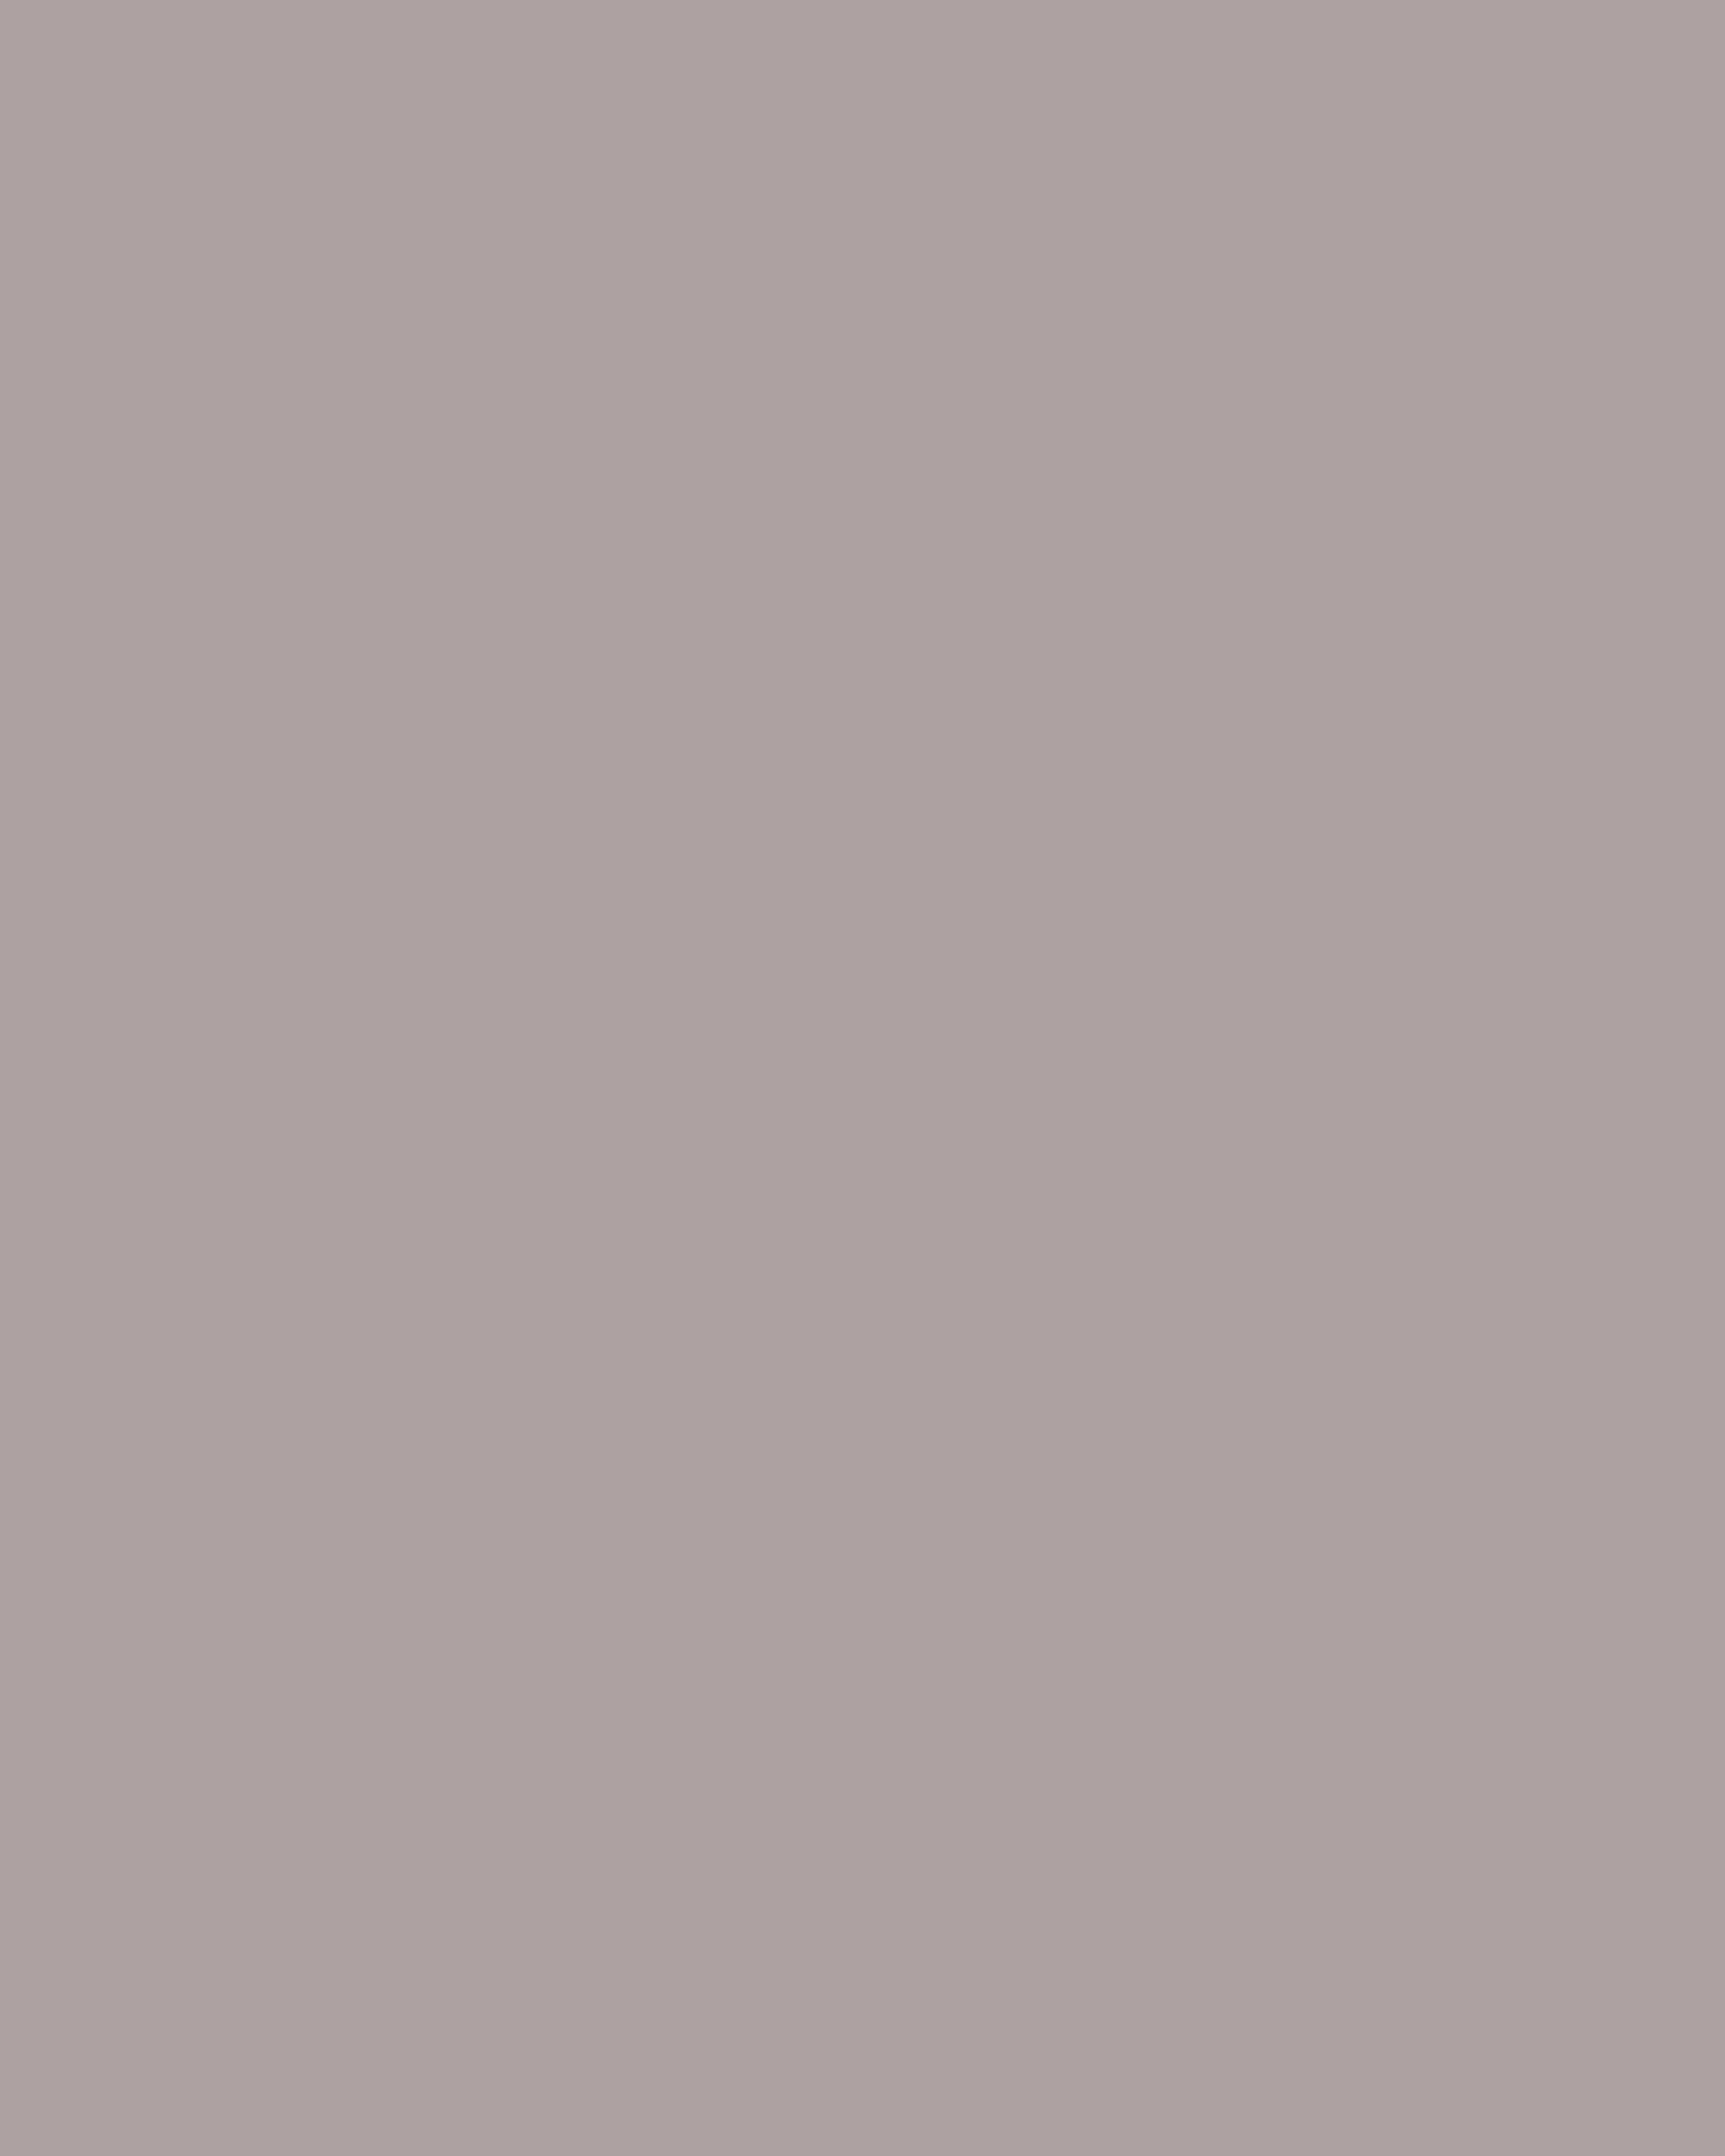 Лучо Фонтана. Распятие. 1957. Керамика, цветная глазурь. Собрание Карстена Греве, Санкт-Мориц. ©Fondazione Lucio Fontana, by SIAE 2019